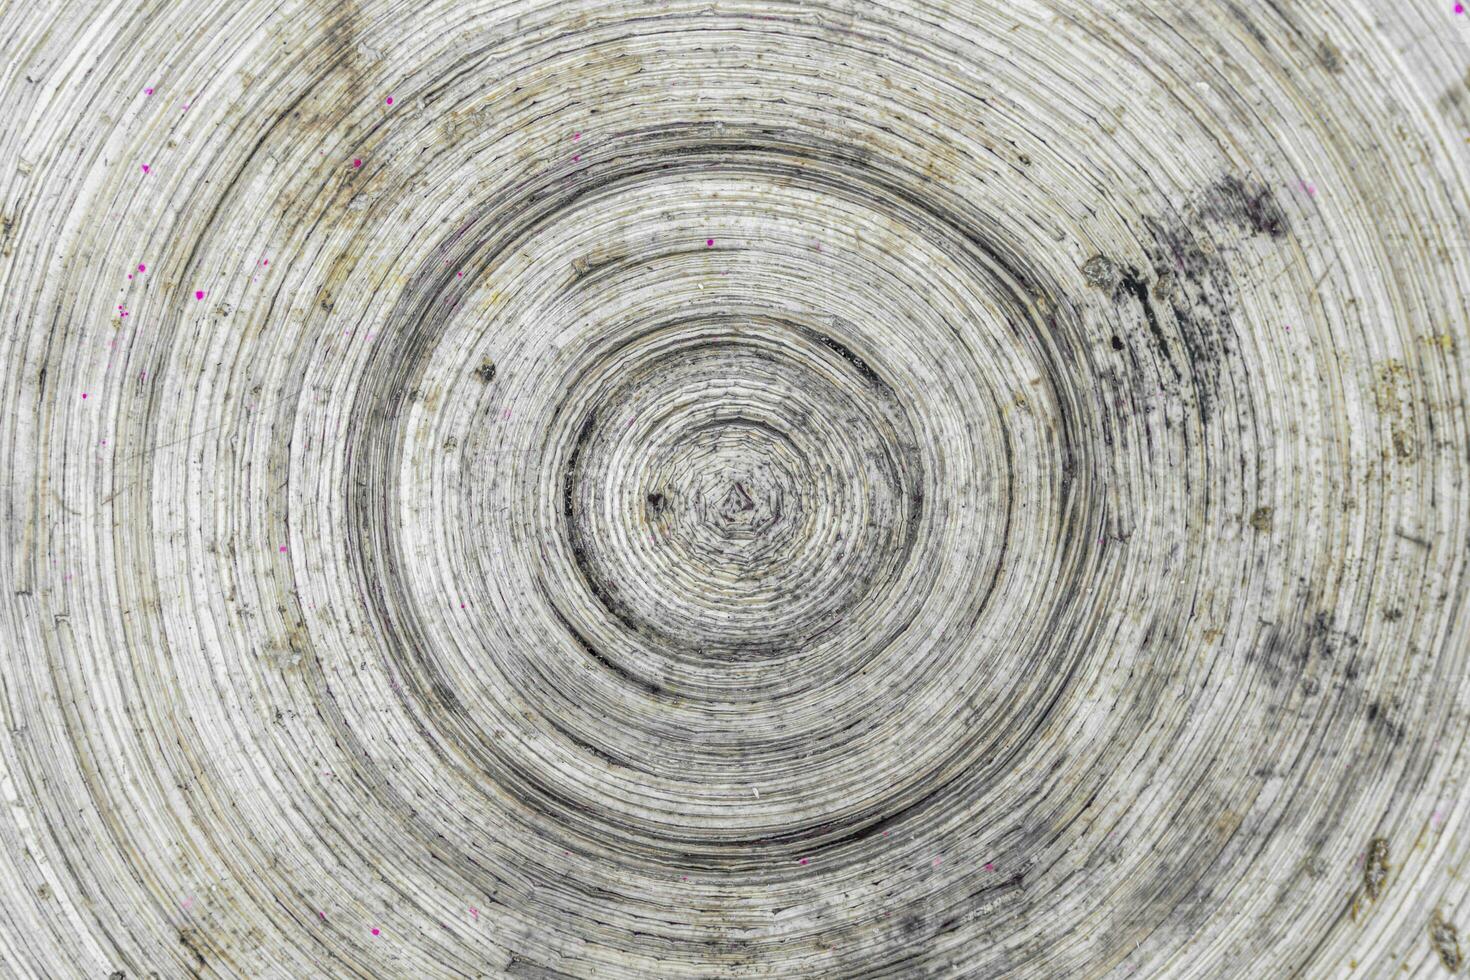 detailopname van een spiraal vormig structuur Aan een houten paneel - oud houten bord achtergrond foto